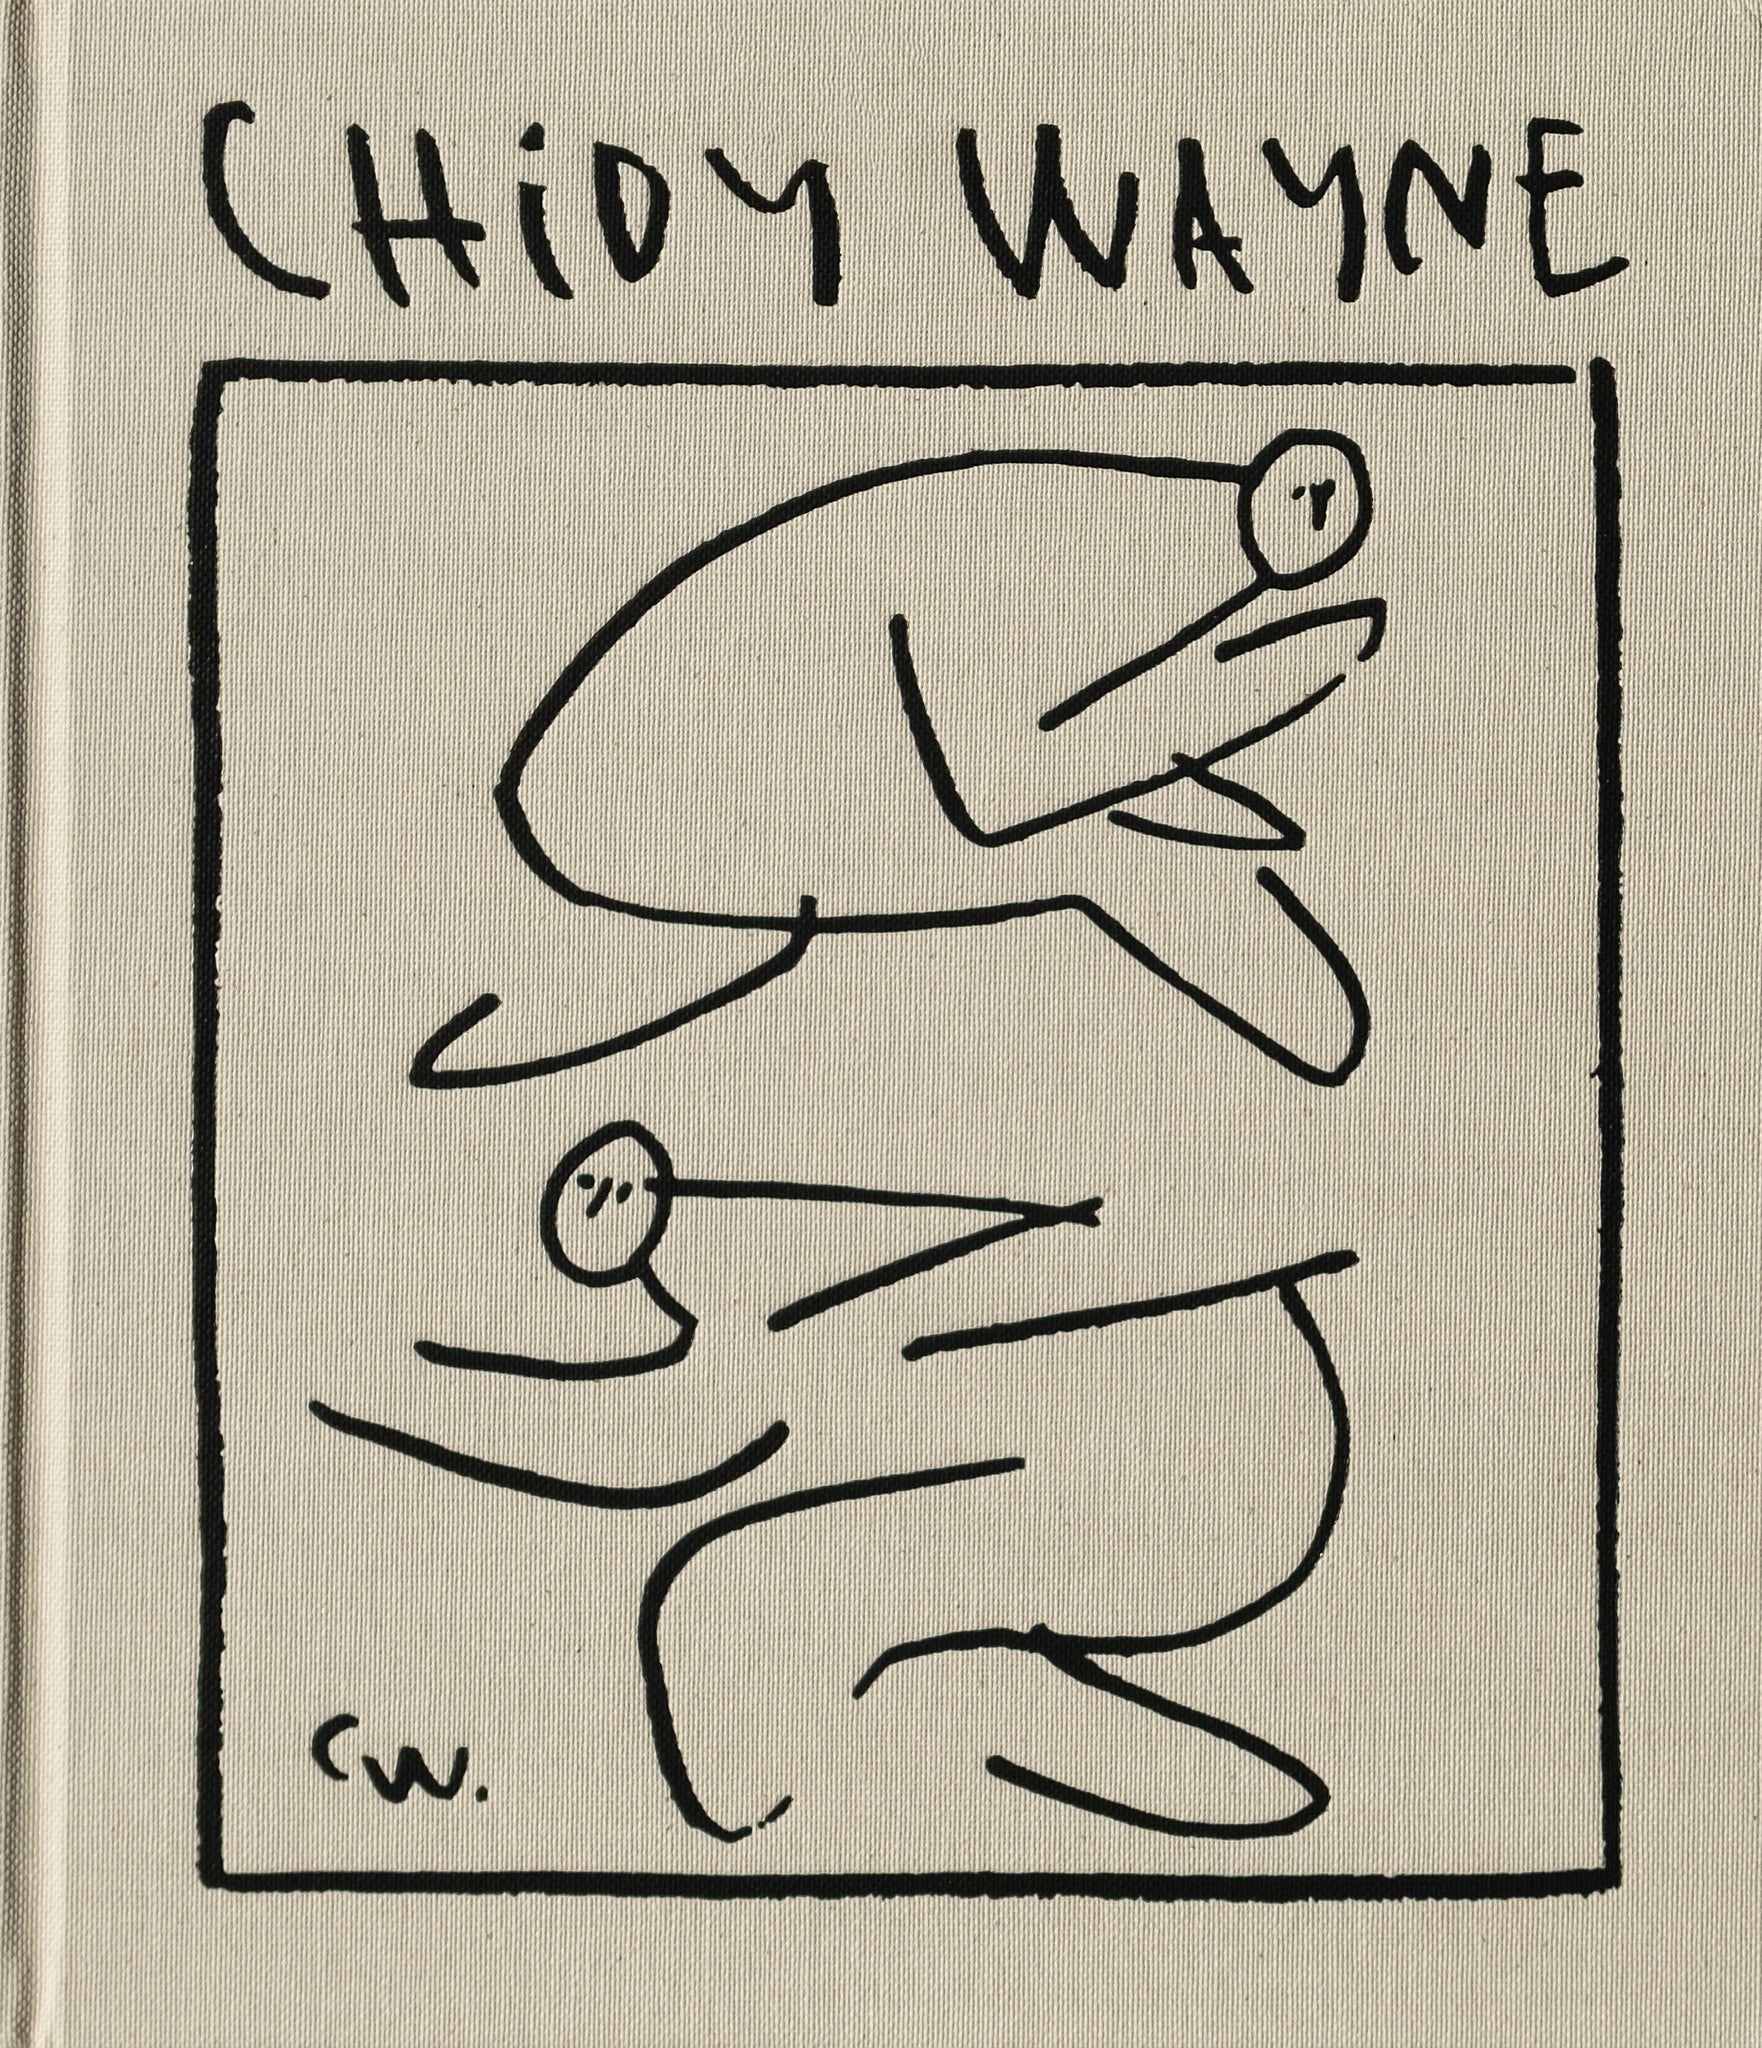 Chidy Wayne